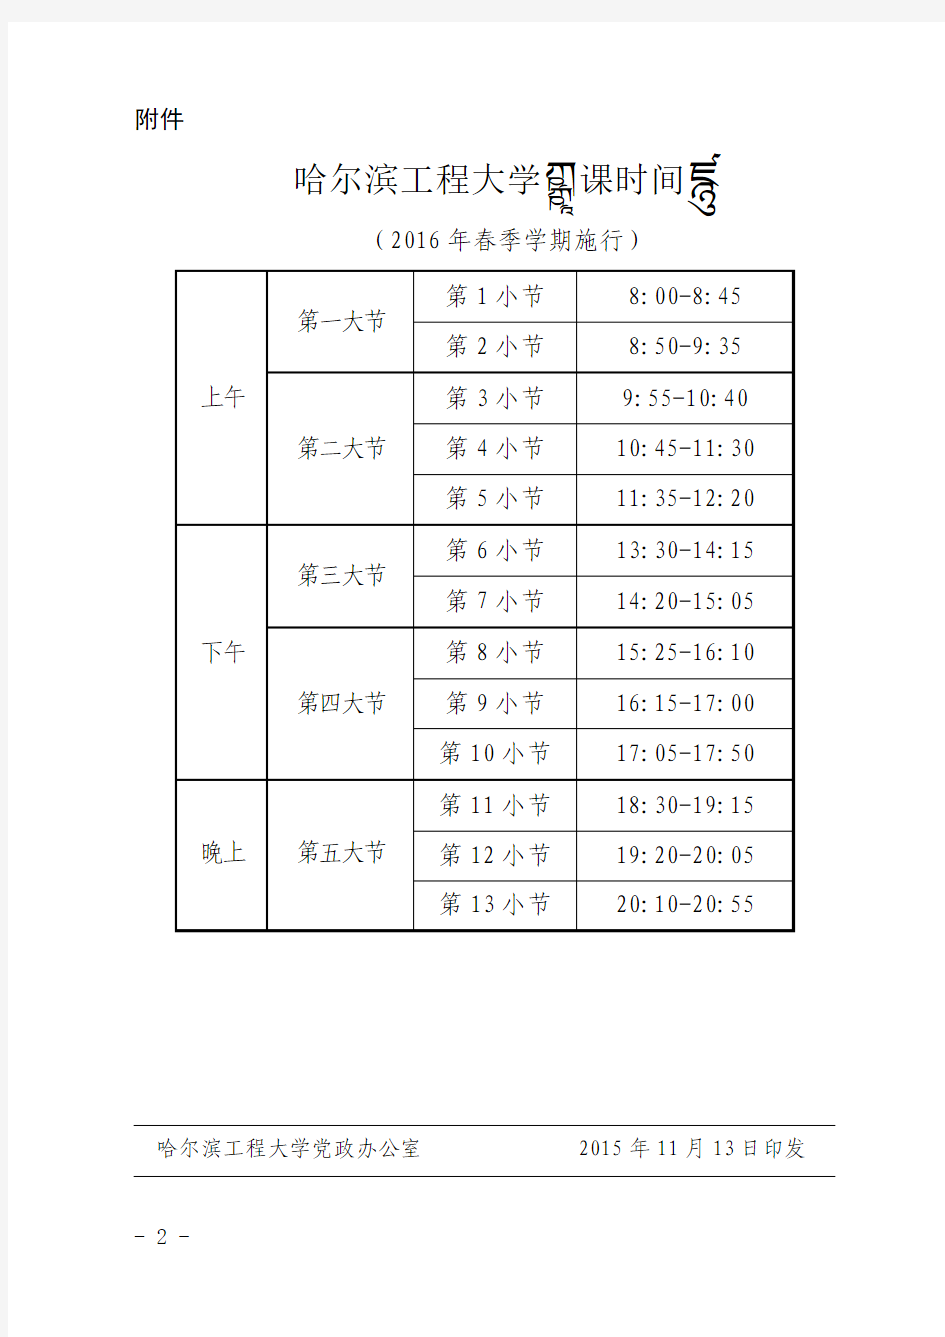 哈尔滨工程大学上课时间表